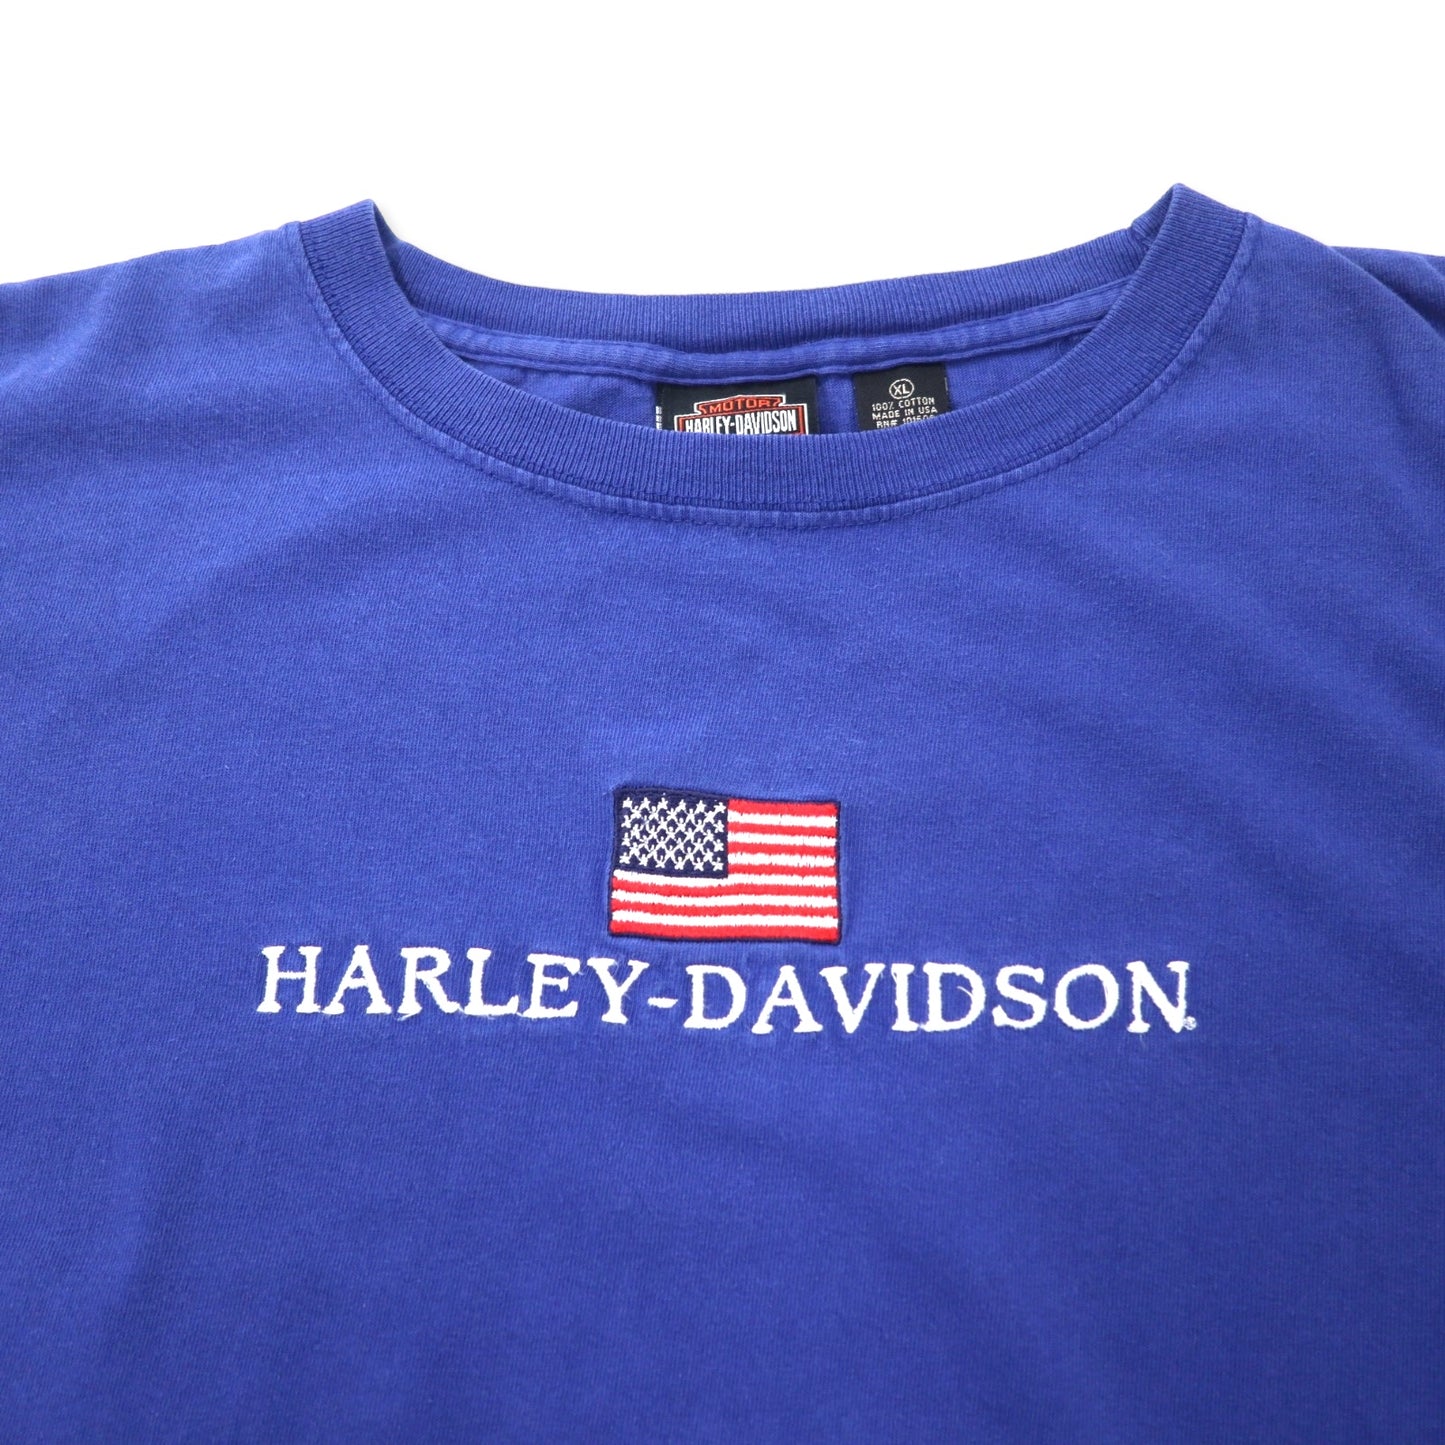 HARLEY DAVIDSON USA製 ロゴ刺繍 Tシャツ XL ブルー コットン 星条旗